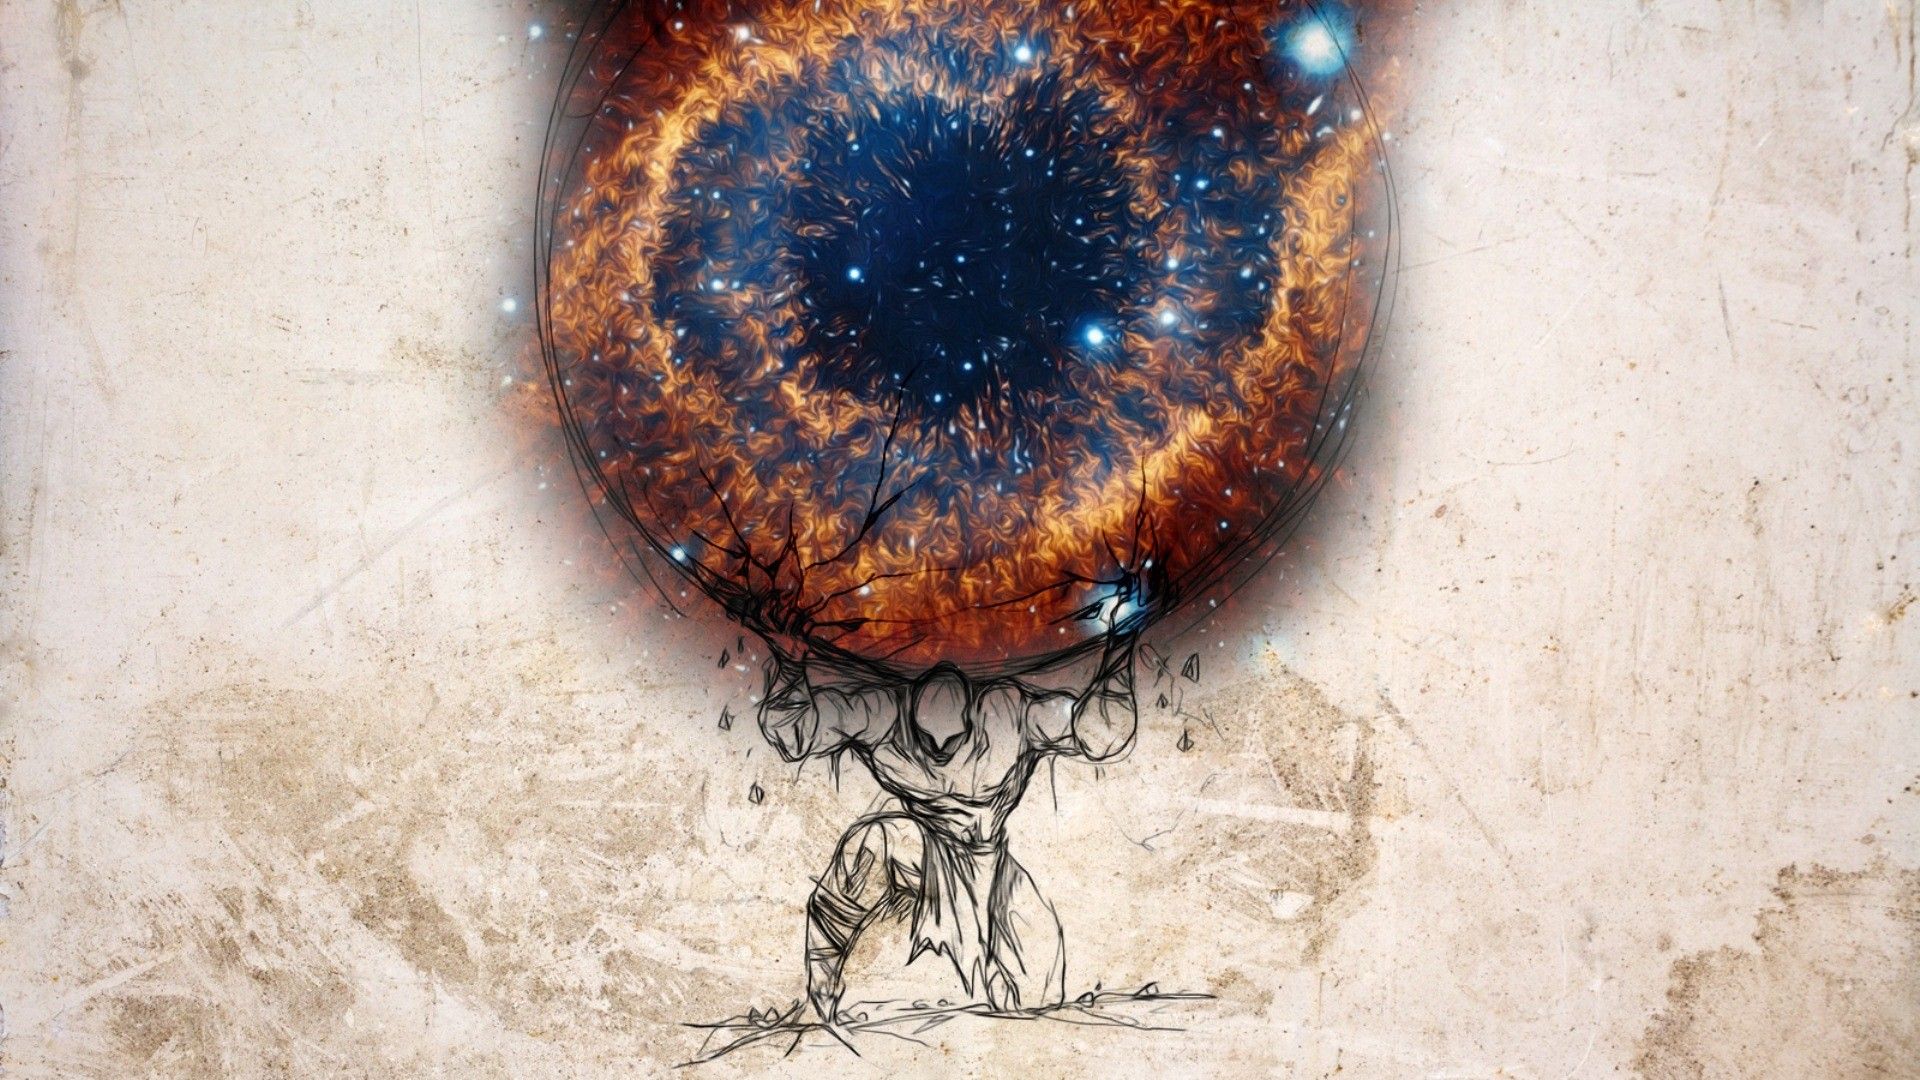 Atlas eye of god helix nebula wallpaper - bullshft - oh my god